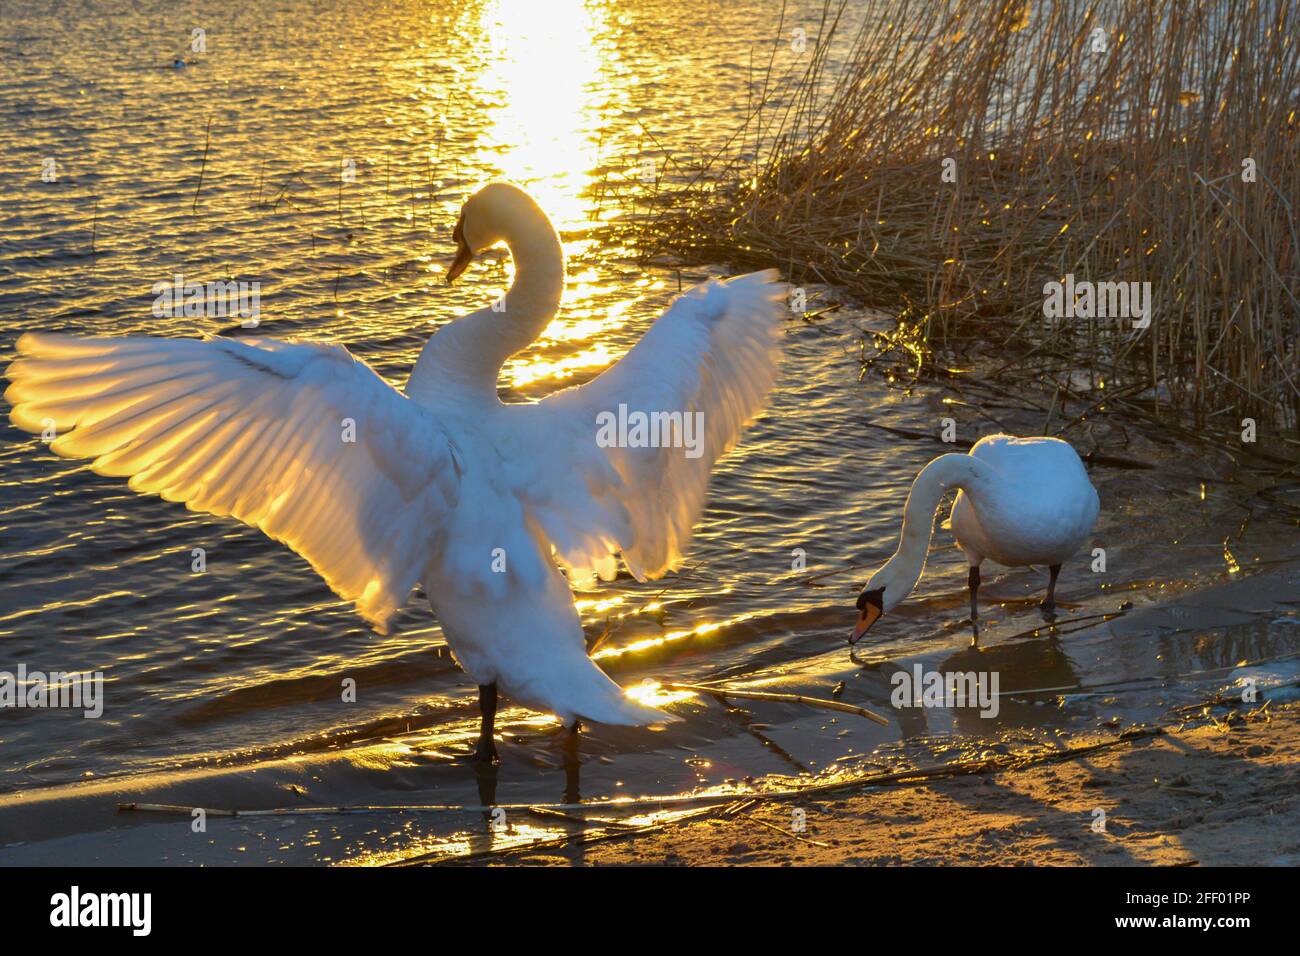 Der weiße Schwan breitet seine Flügel im Sonnenuntergangswasser aus. Schwäne leuchten wunderschön in den goldenen Strahlen der Sonne. Sonnenuntergang am See. Sommerlandschaft Stockfoto